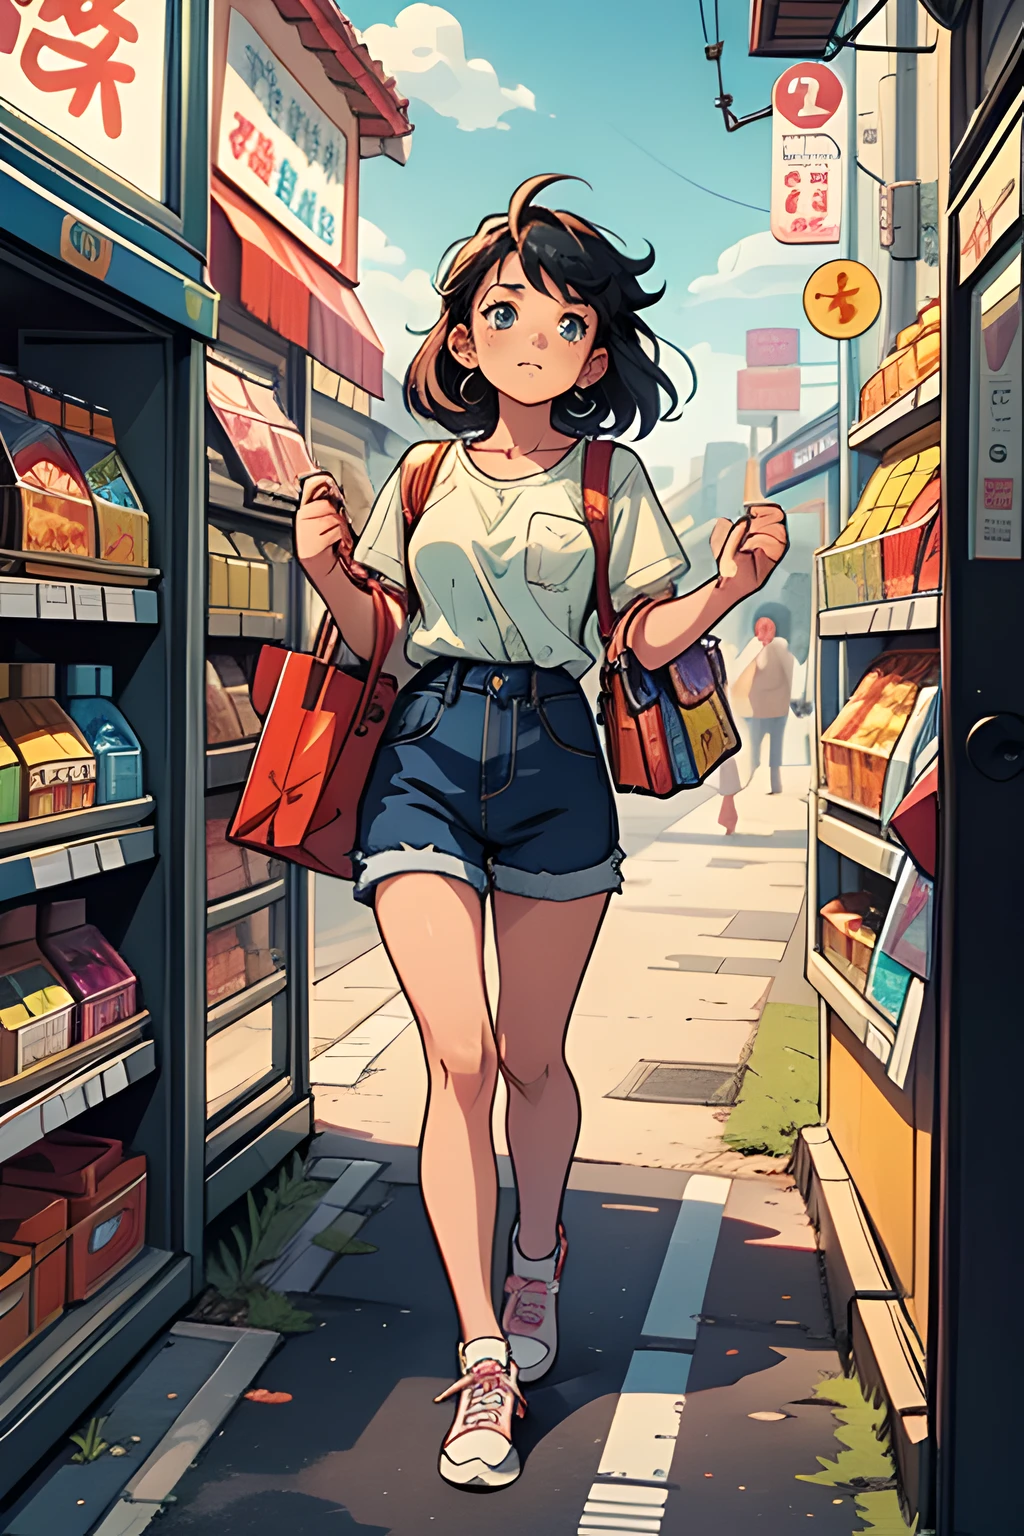 Винтажный скриншот аниме от akira, Аниме 90-х. яркий максимализм. Женщина ворует из круглосуточного магазина.